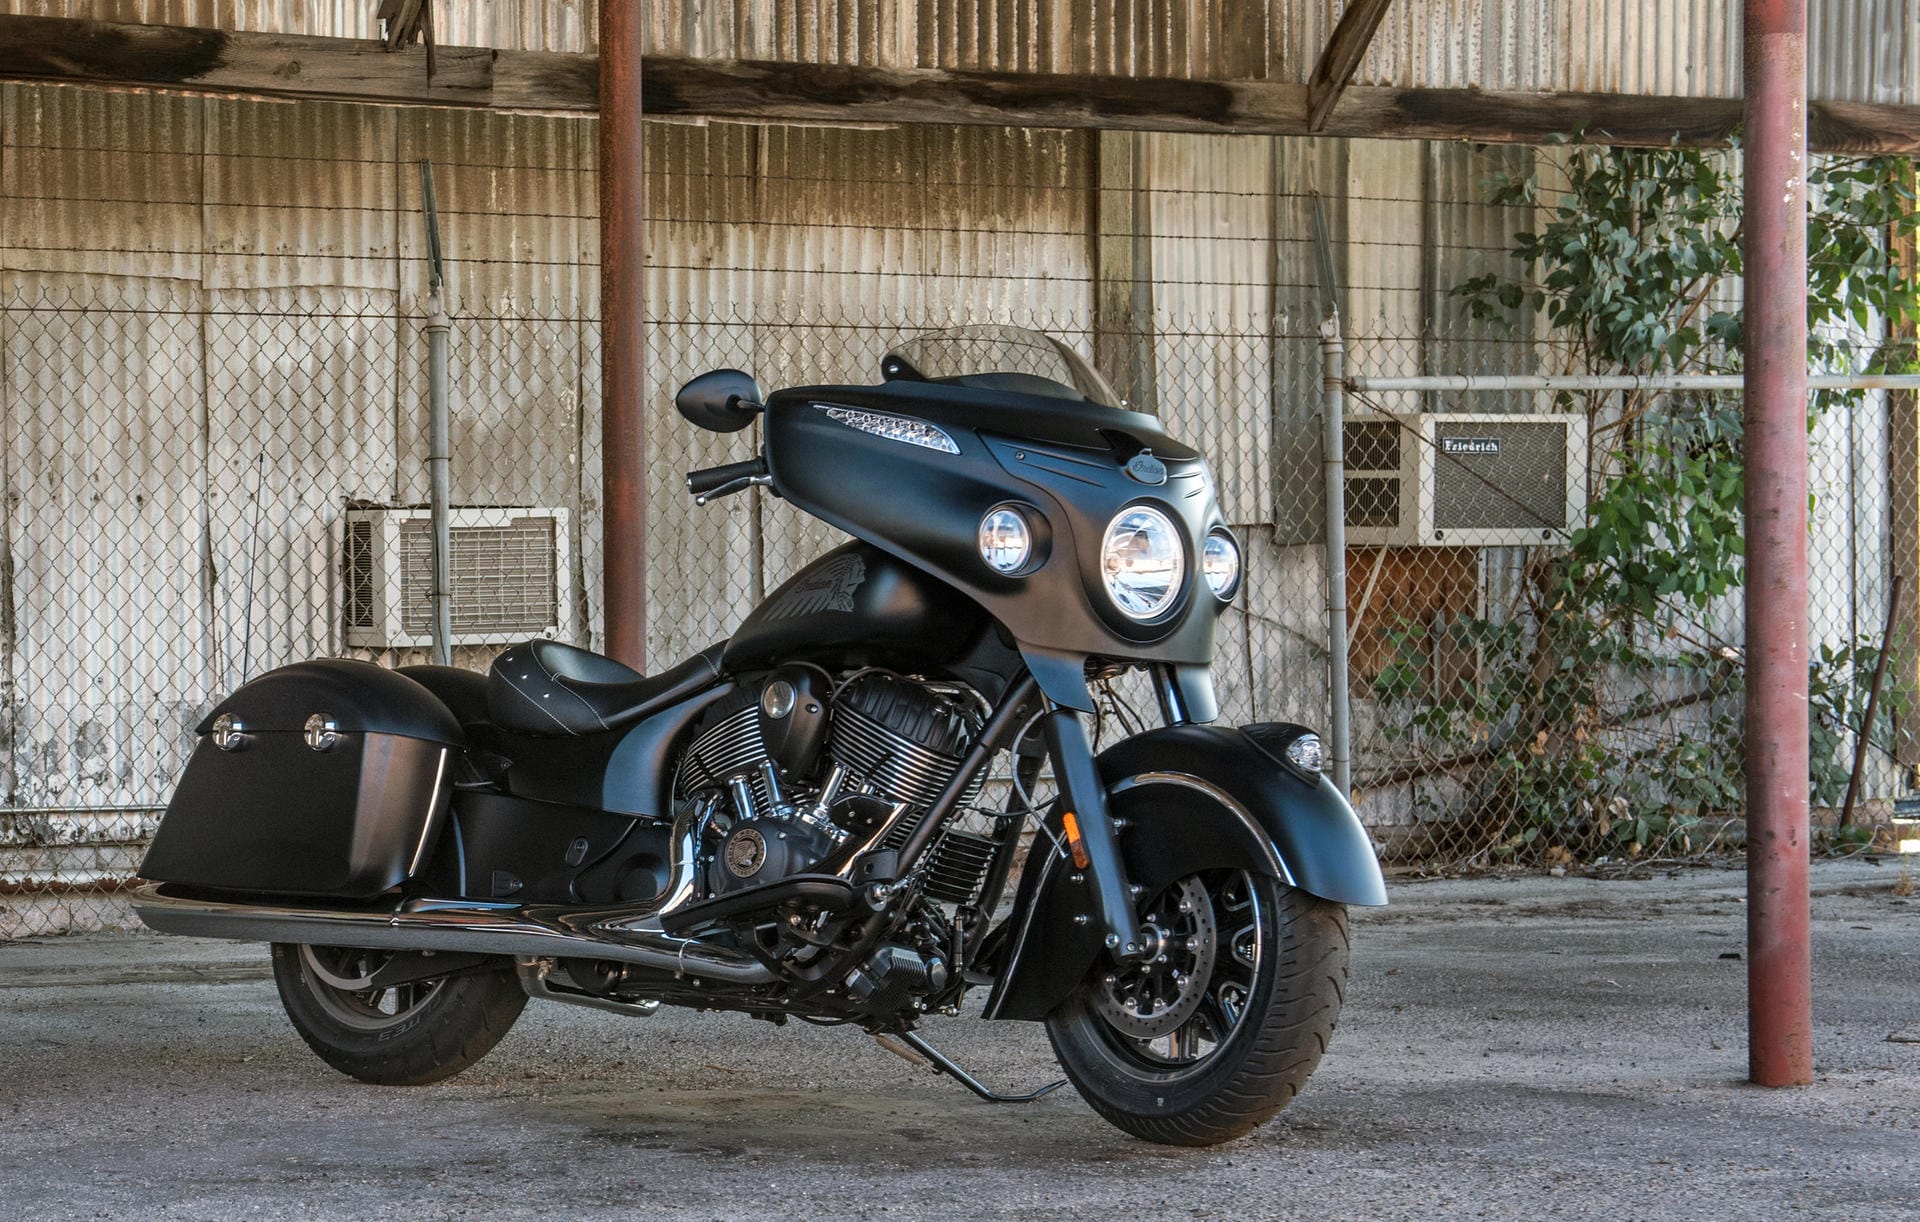 Für diese Indian "Dark Horse" sind knappe 27.000 Euro fällig. Das sind Preise auf Harley-Nievau.